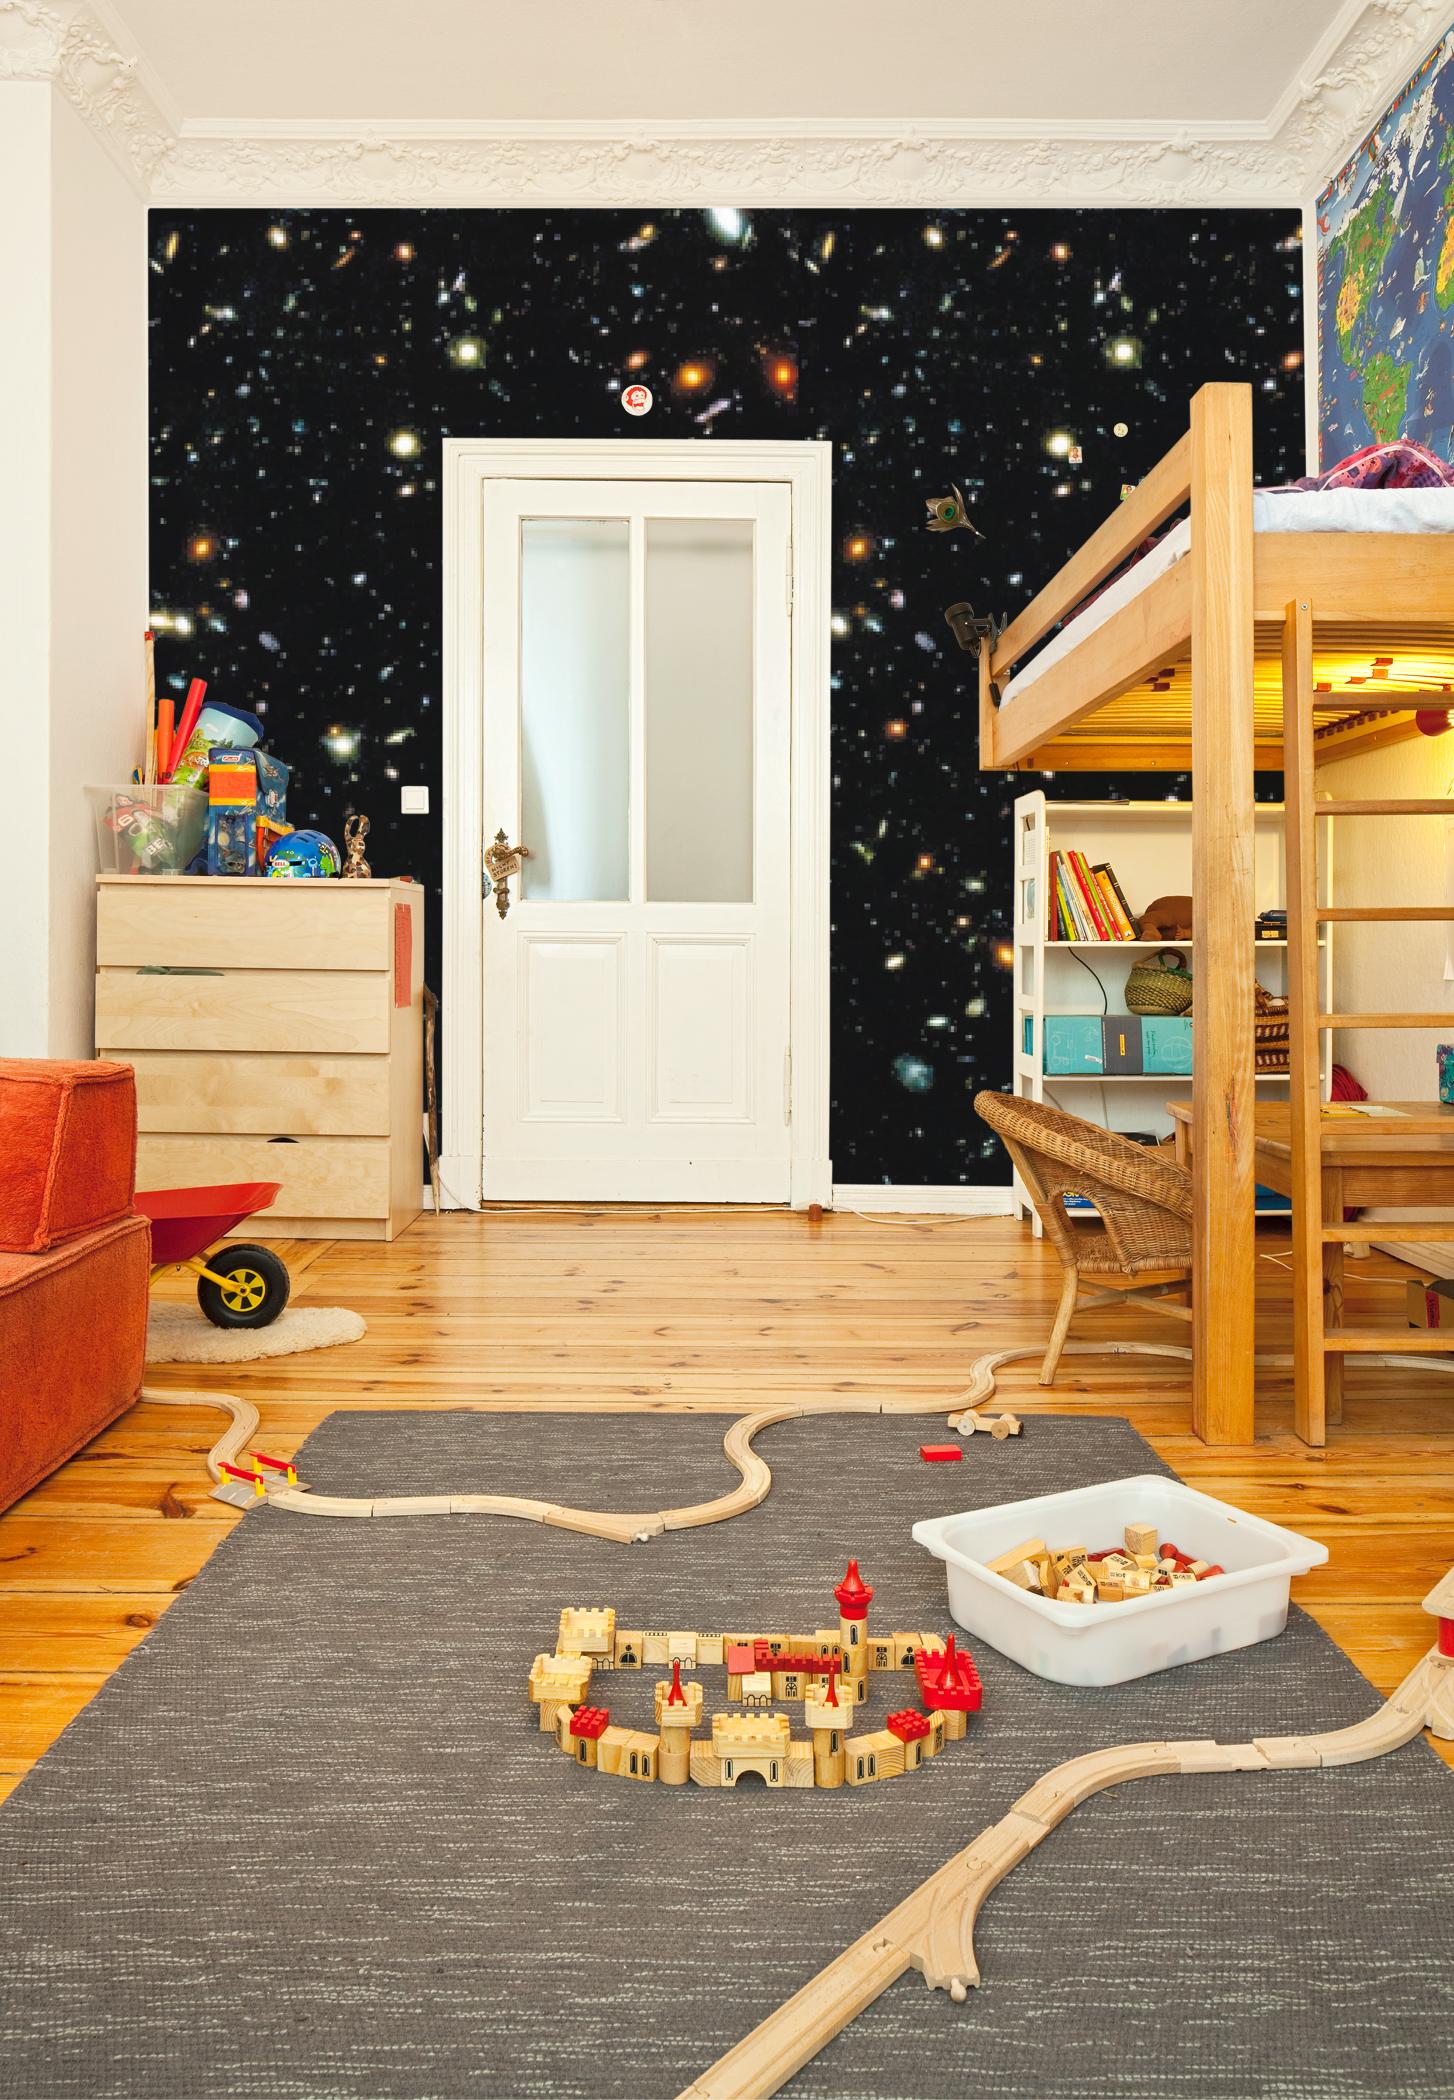 Weltraum-Tapete im Kinderzimmer #wandgestaltung #tapetenmuster #wandgestaltungkinderzimmer #vliestapete ©Extratapete